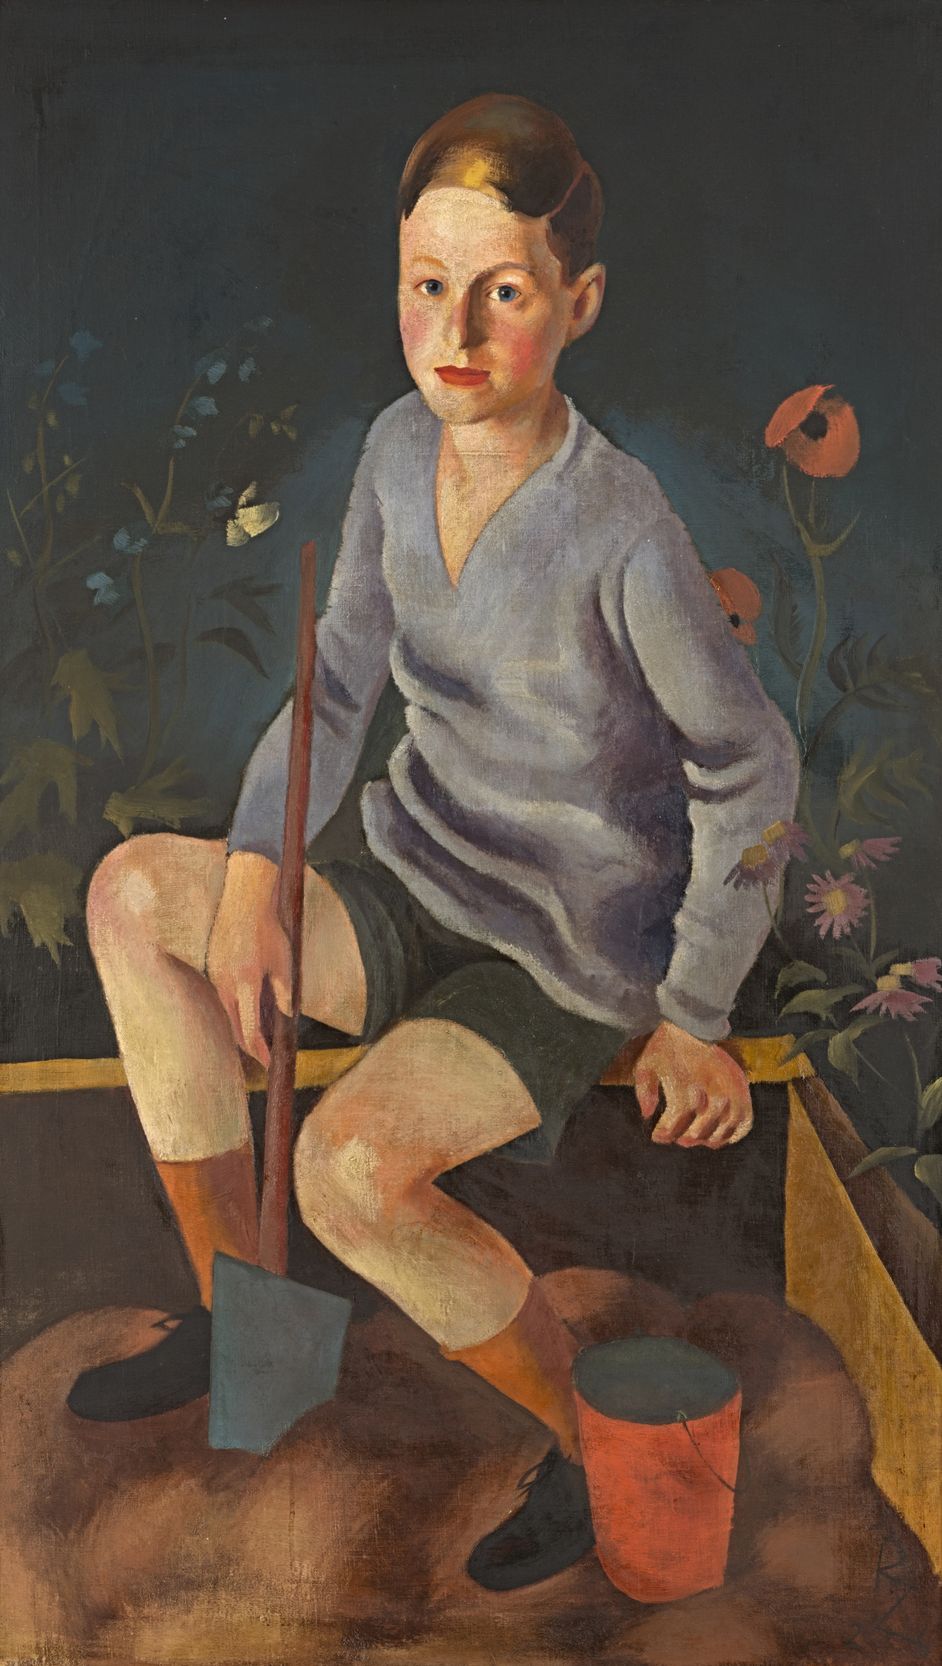 Gemälde von Richard Ziegler, Öl auf Leinwand, 120 x 71 cm